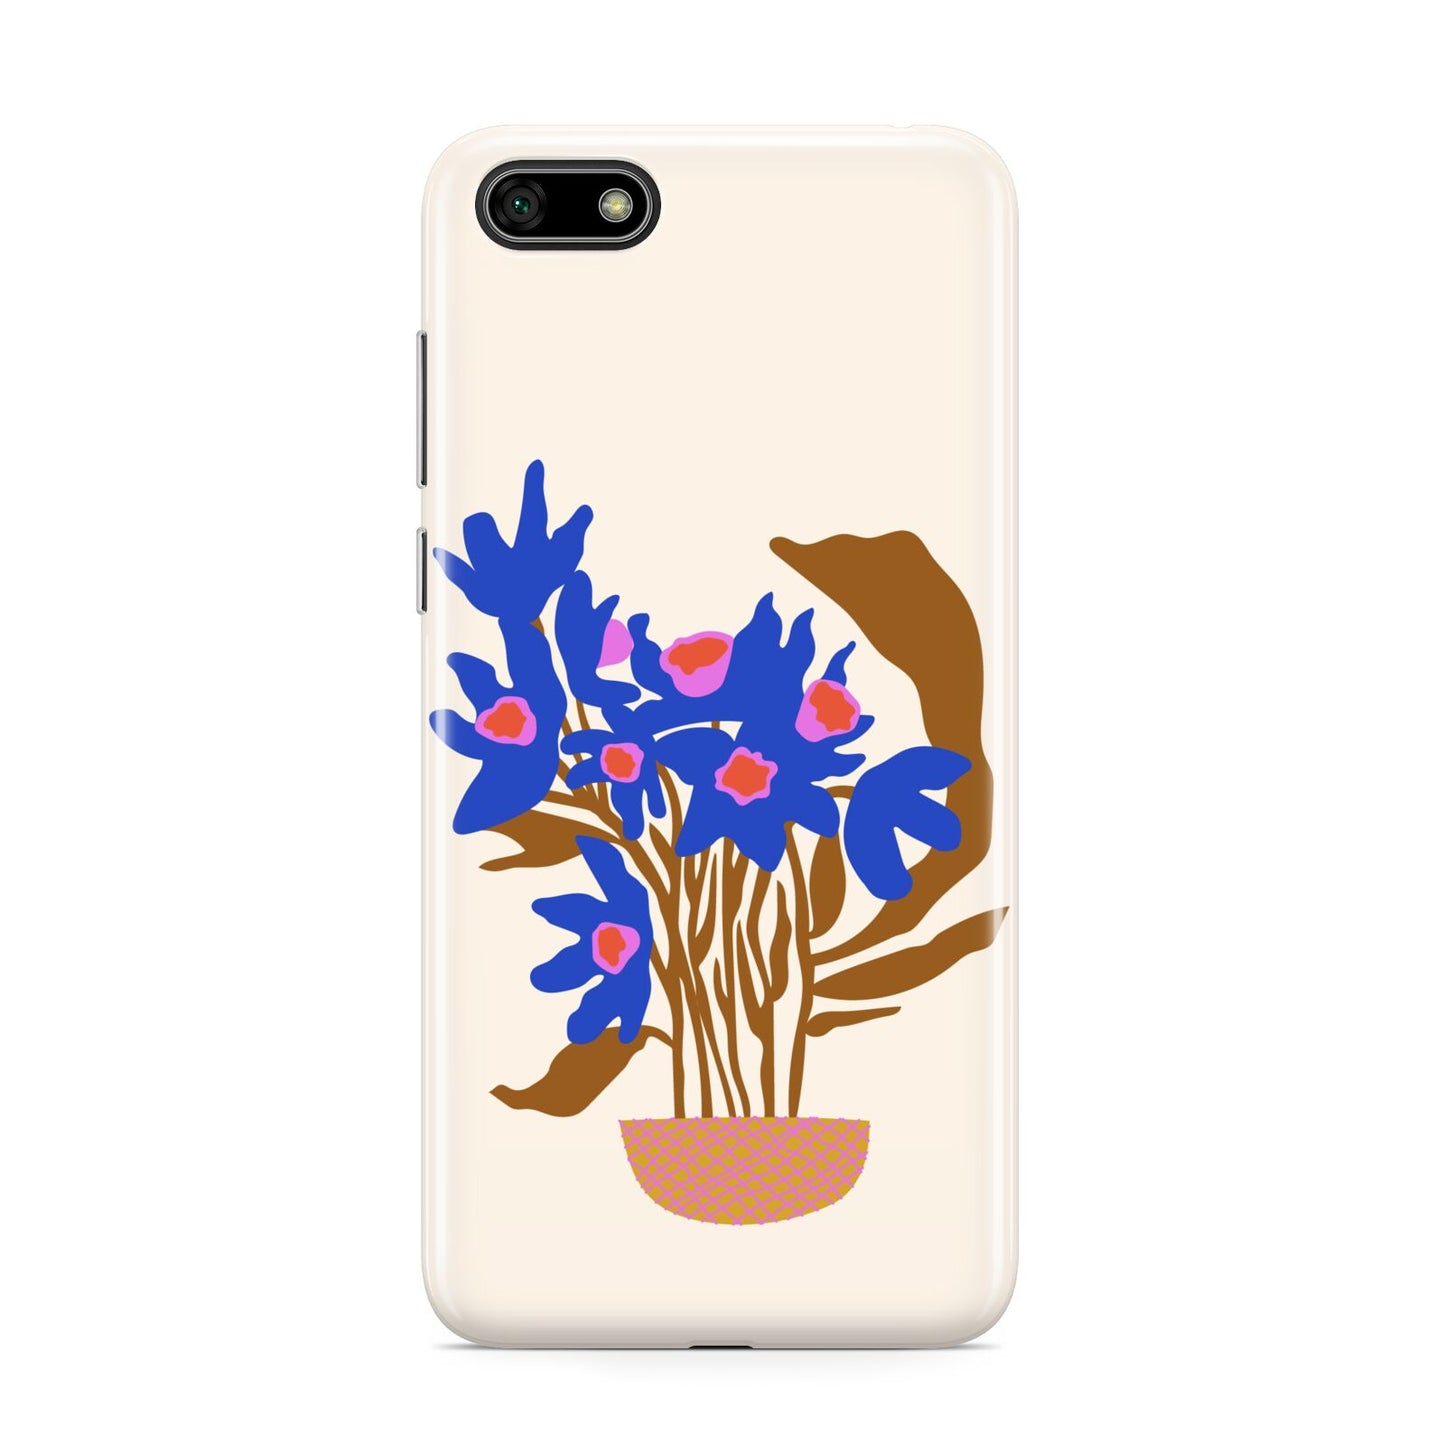 Flowers in a Vase Huawei Y5 Prime 2018 Phone Case